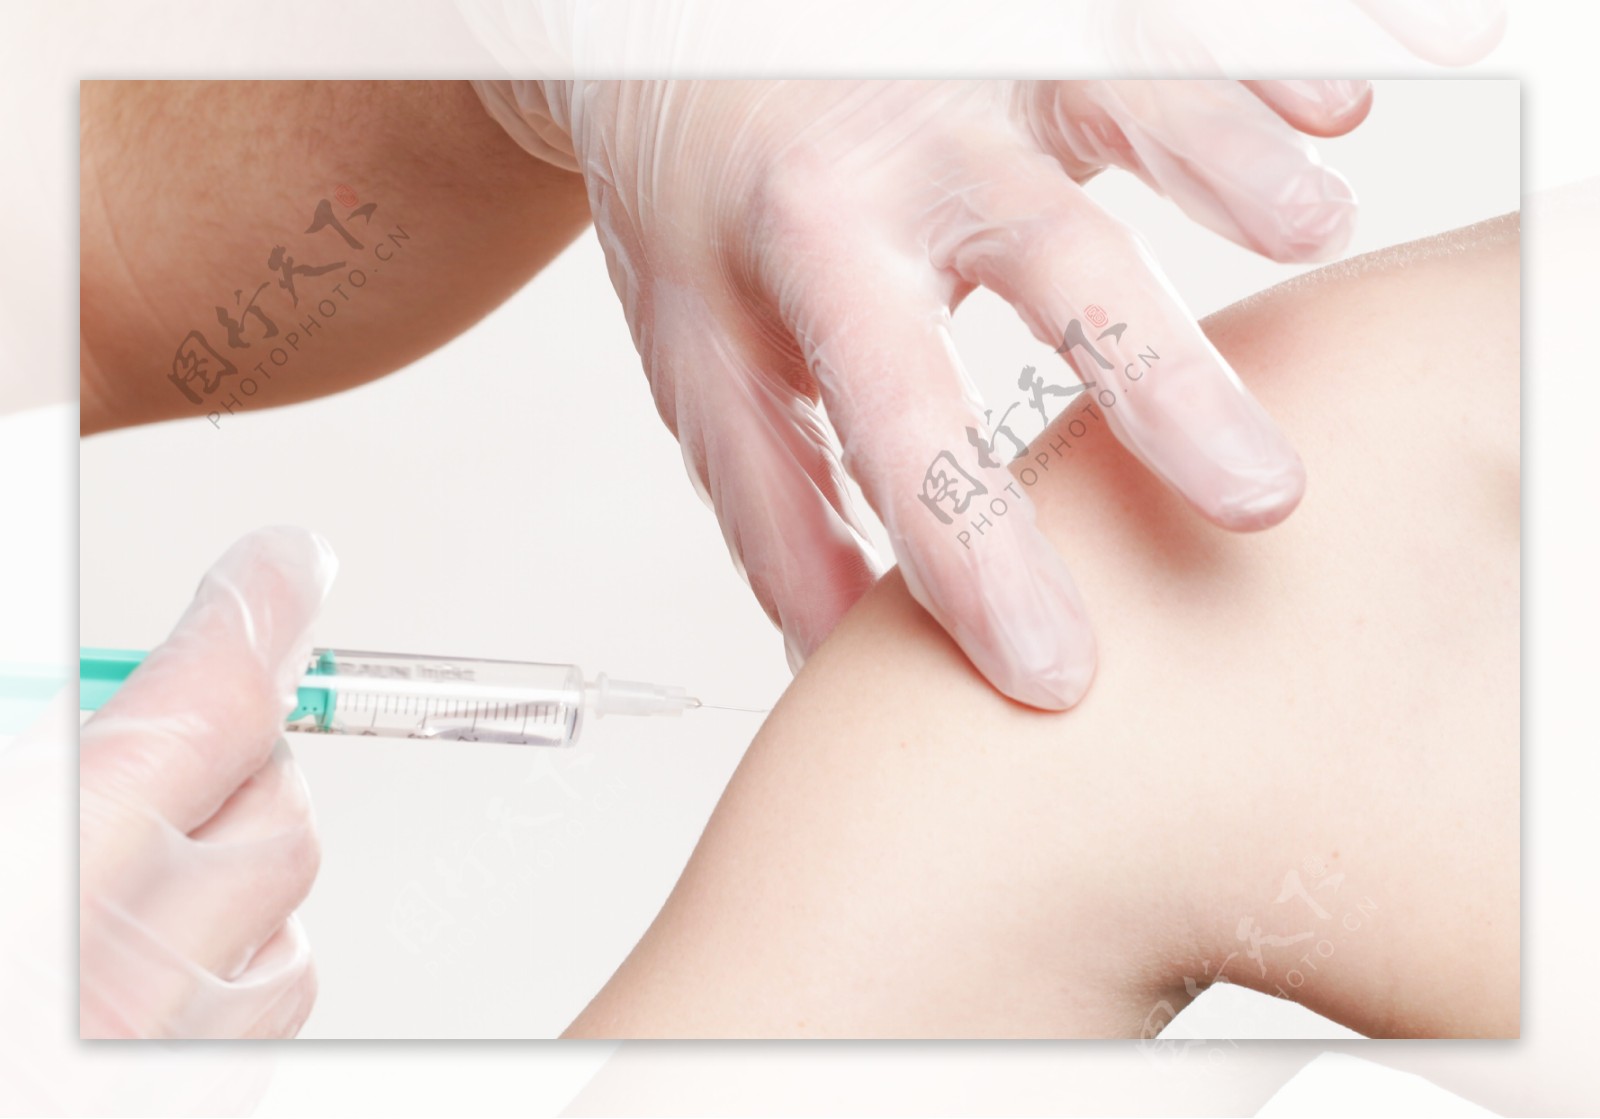 疫苗注射